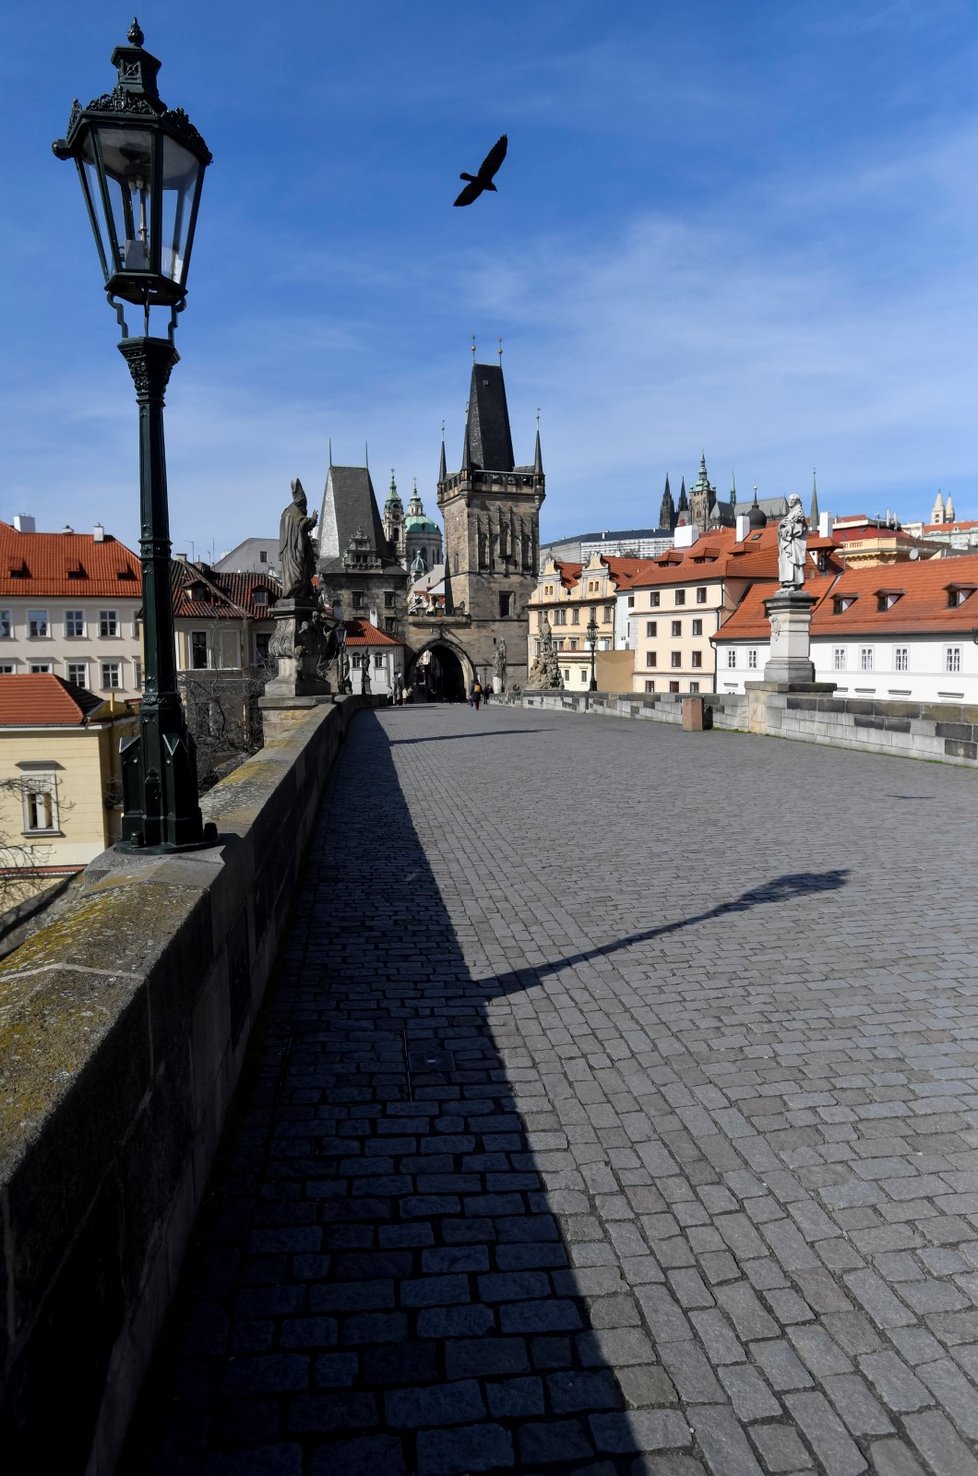 Vylidněné ulice, nádraží i hlavní silniční tahy - tak vypadá nyní život v Praze (16. 3. 2020).